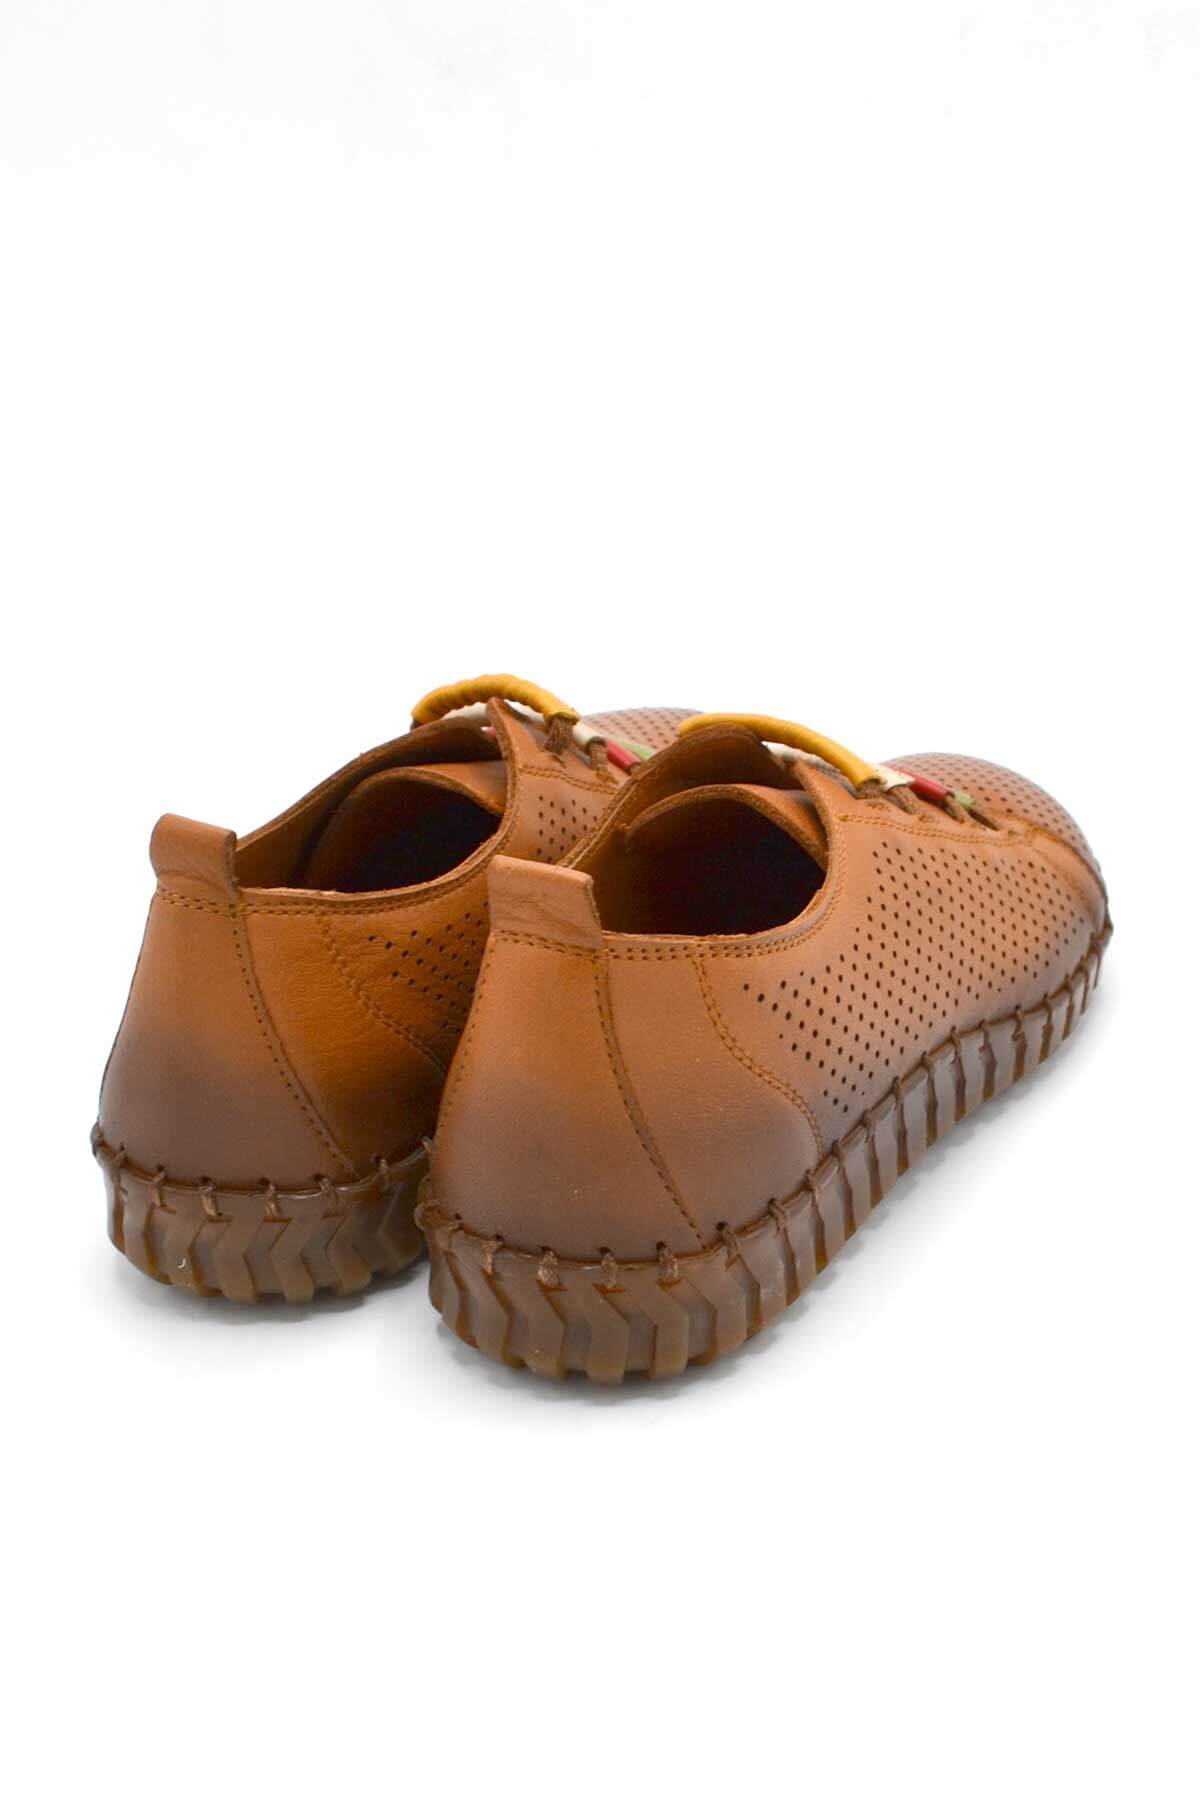 Kadın Comfort Deri Ayakkabı Taba 2010717Y - Thumbnail